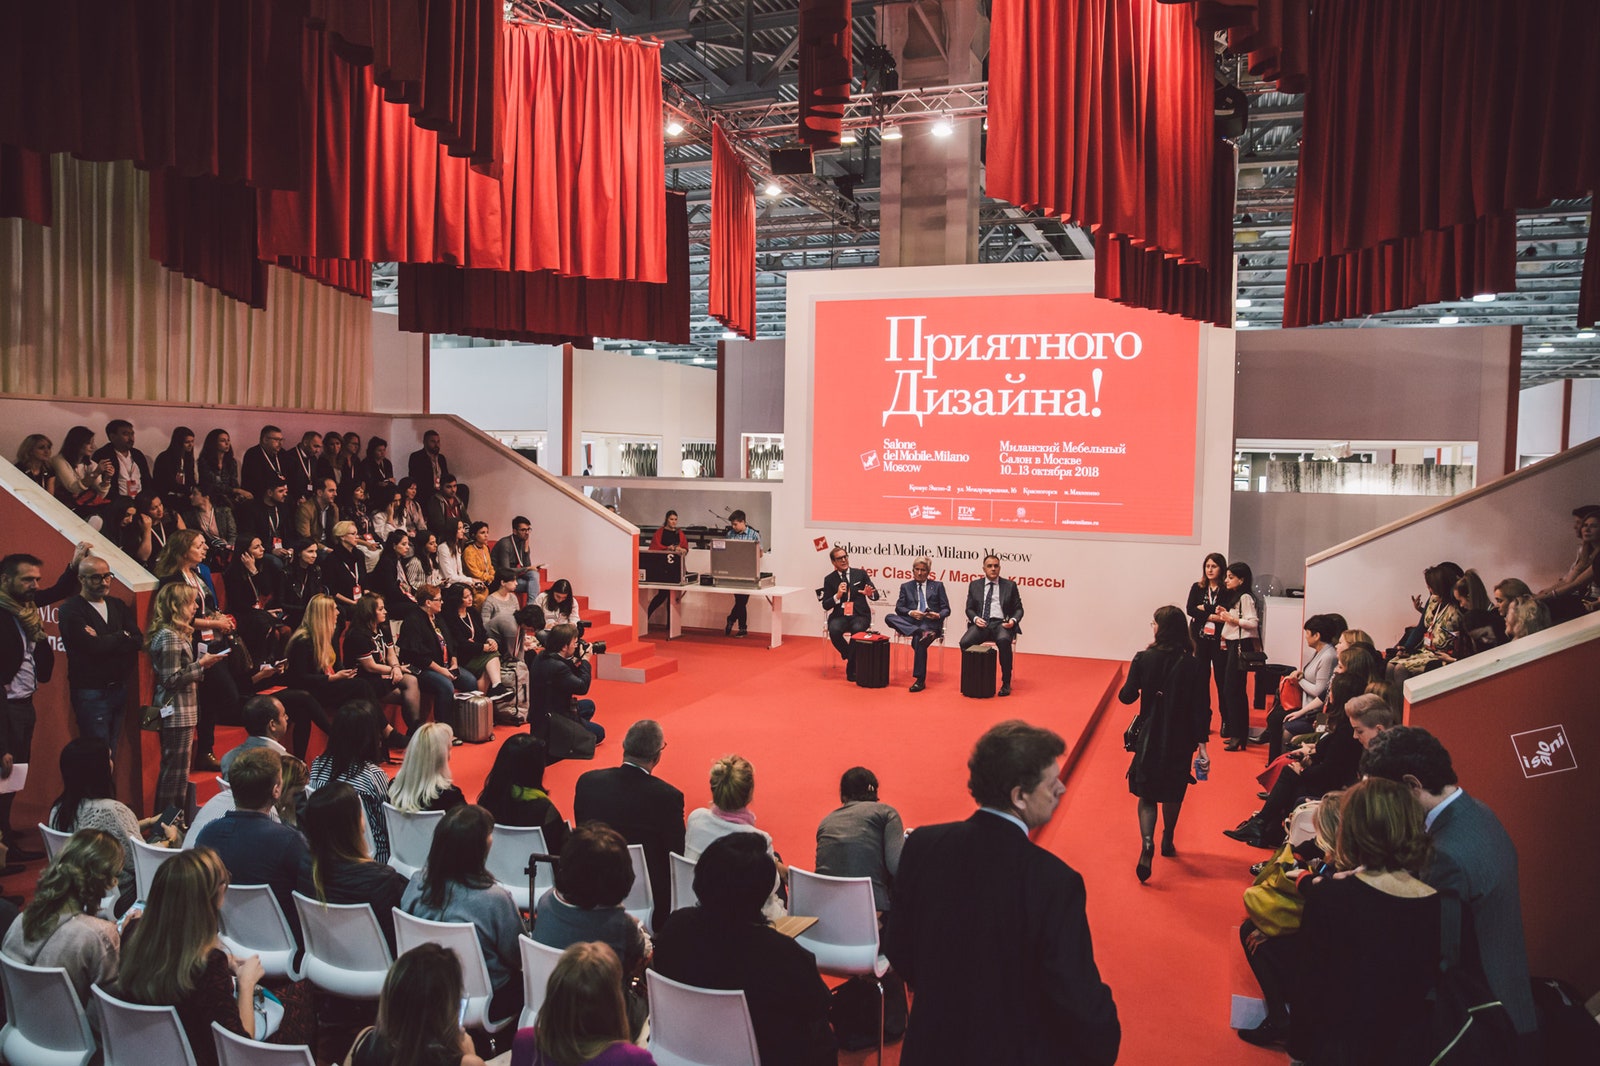 Salone del Mobile.Milano Moscow 2019 масштабная выставка предметов интерьера в “Крокус Экспо”